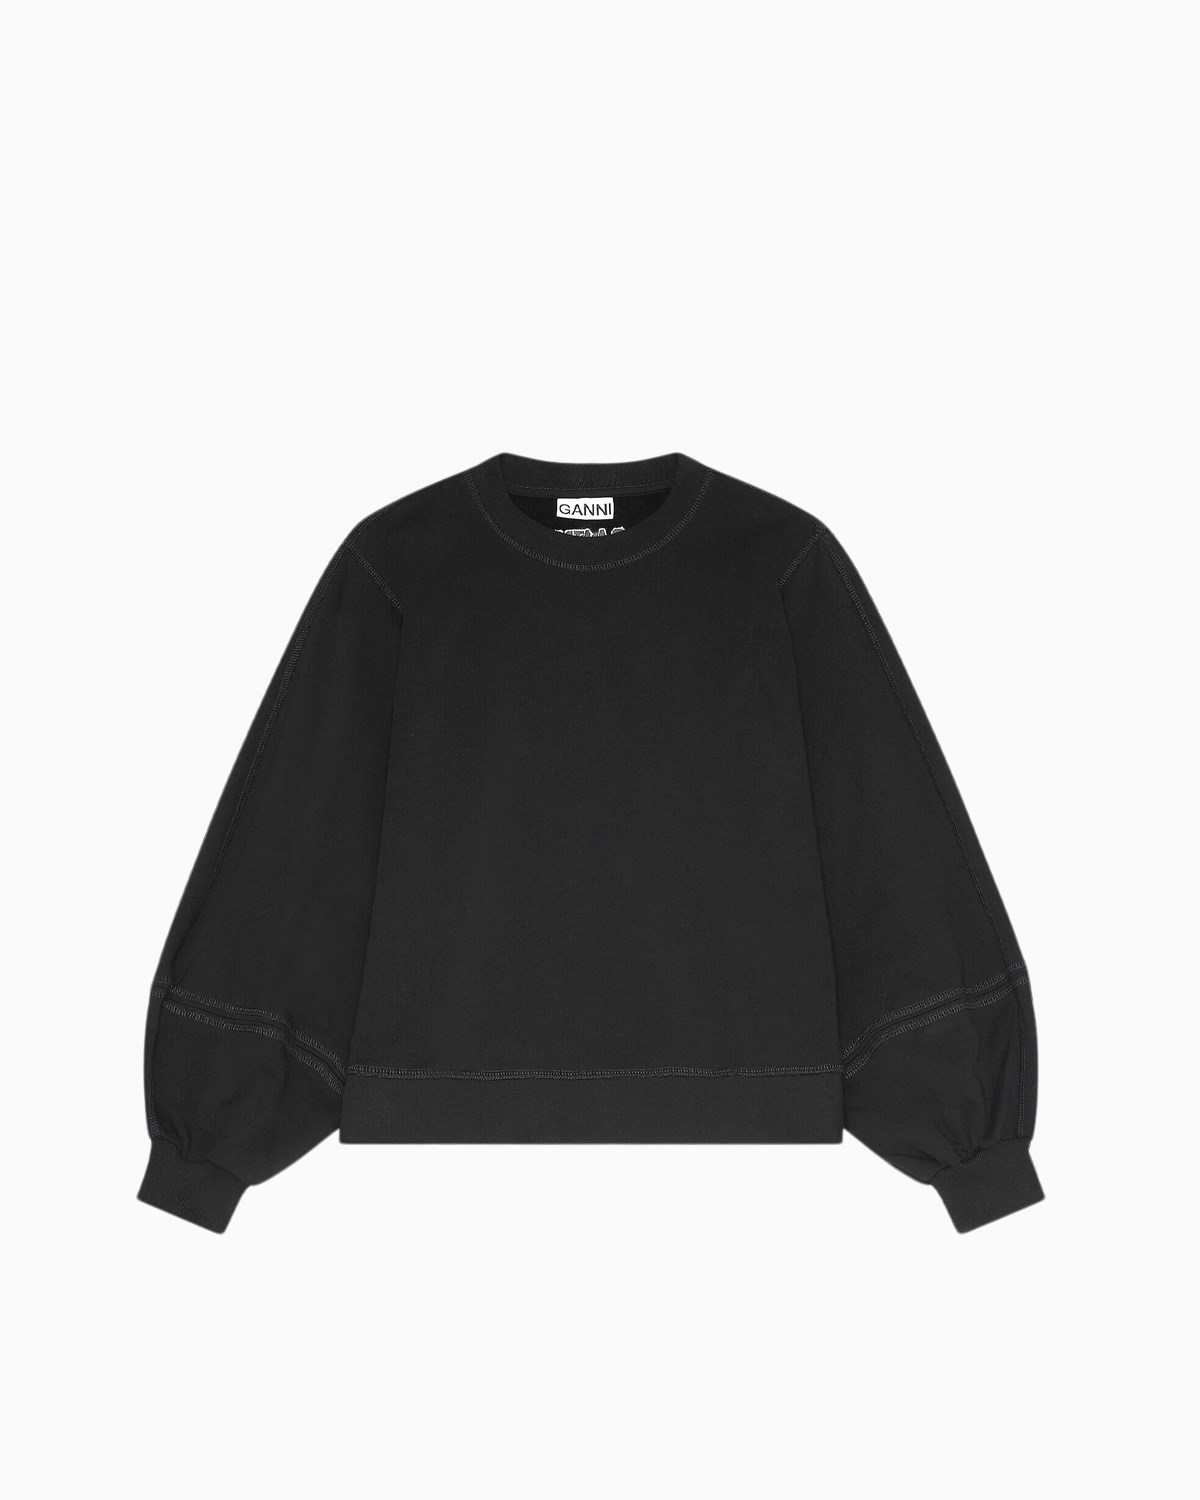 Puff Sleeve Sweatshirt Ganni Tops Sweats & Hoodies Black